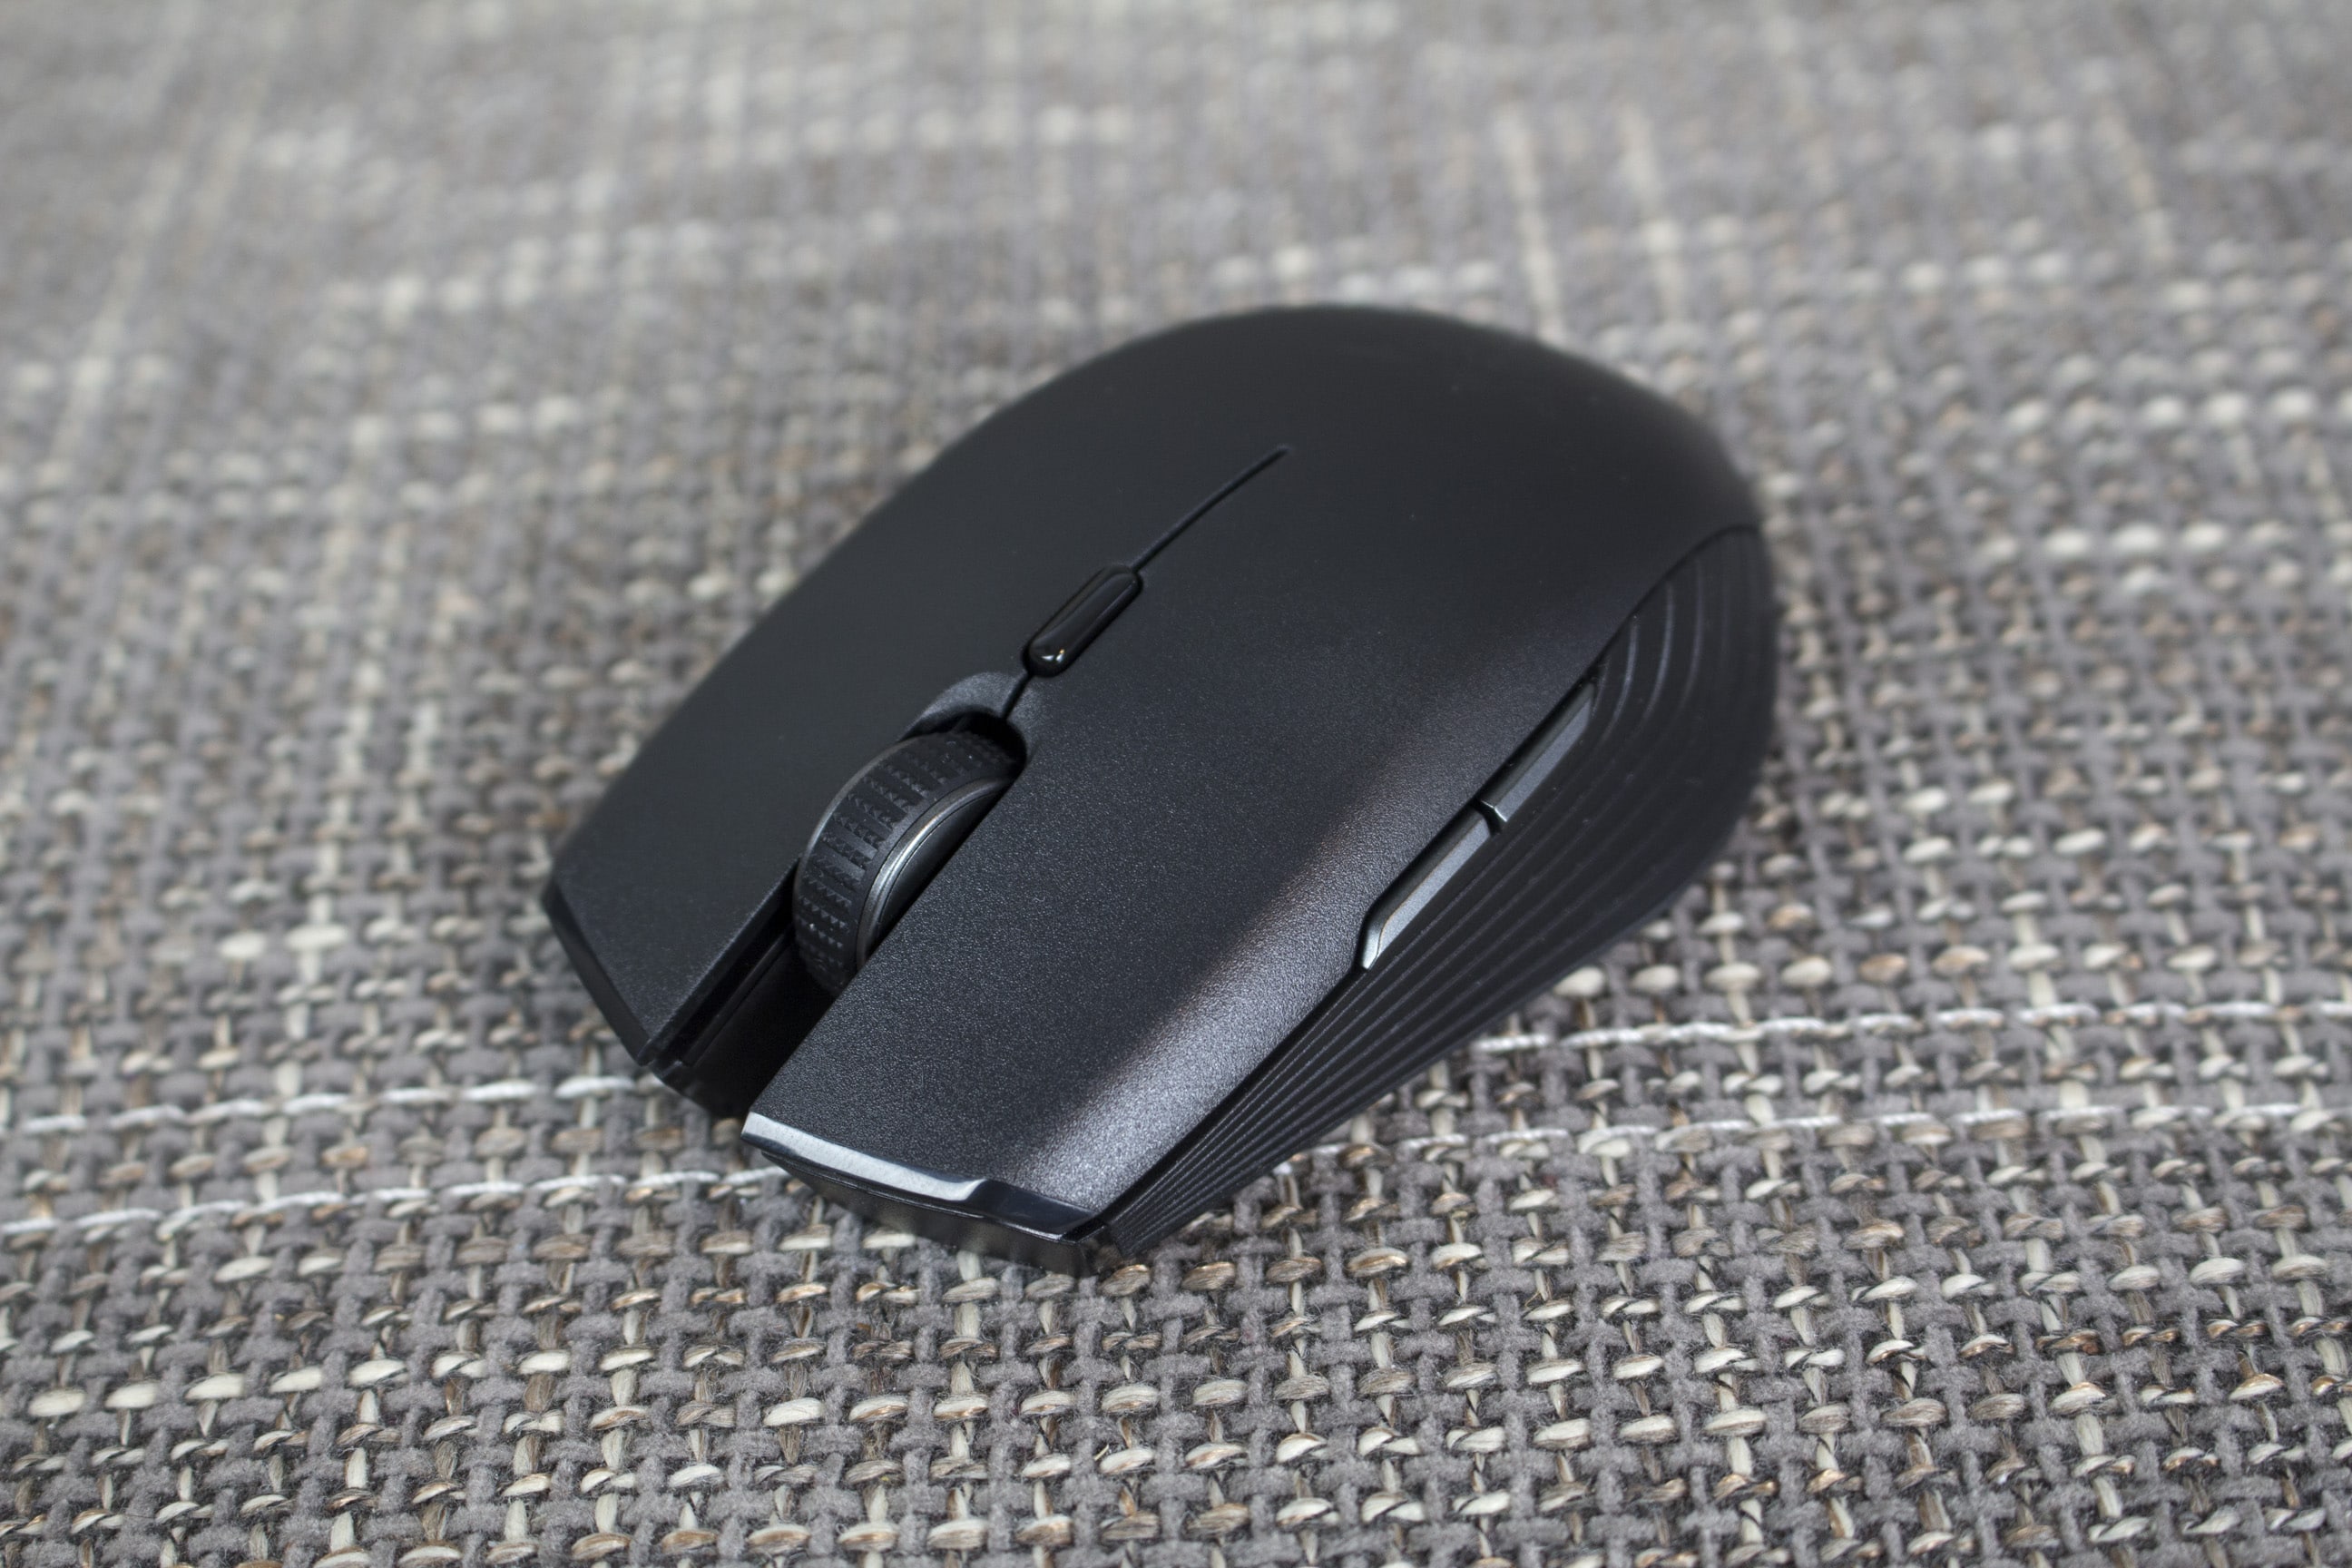 Razer Atheris - Mobile Computer Mouse, Black 